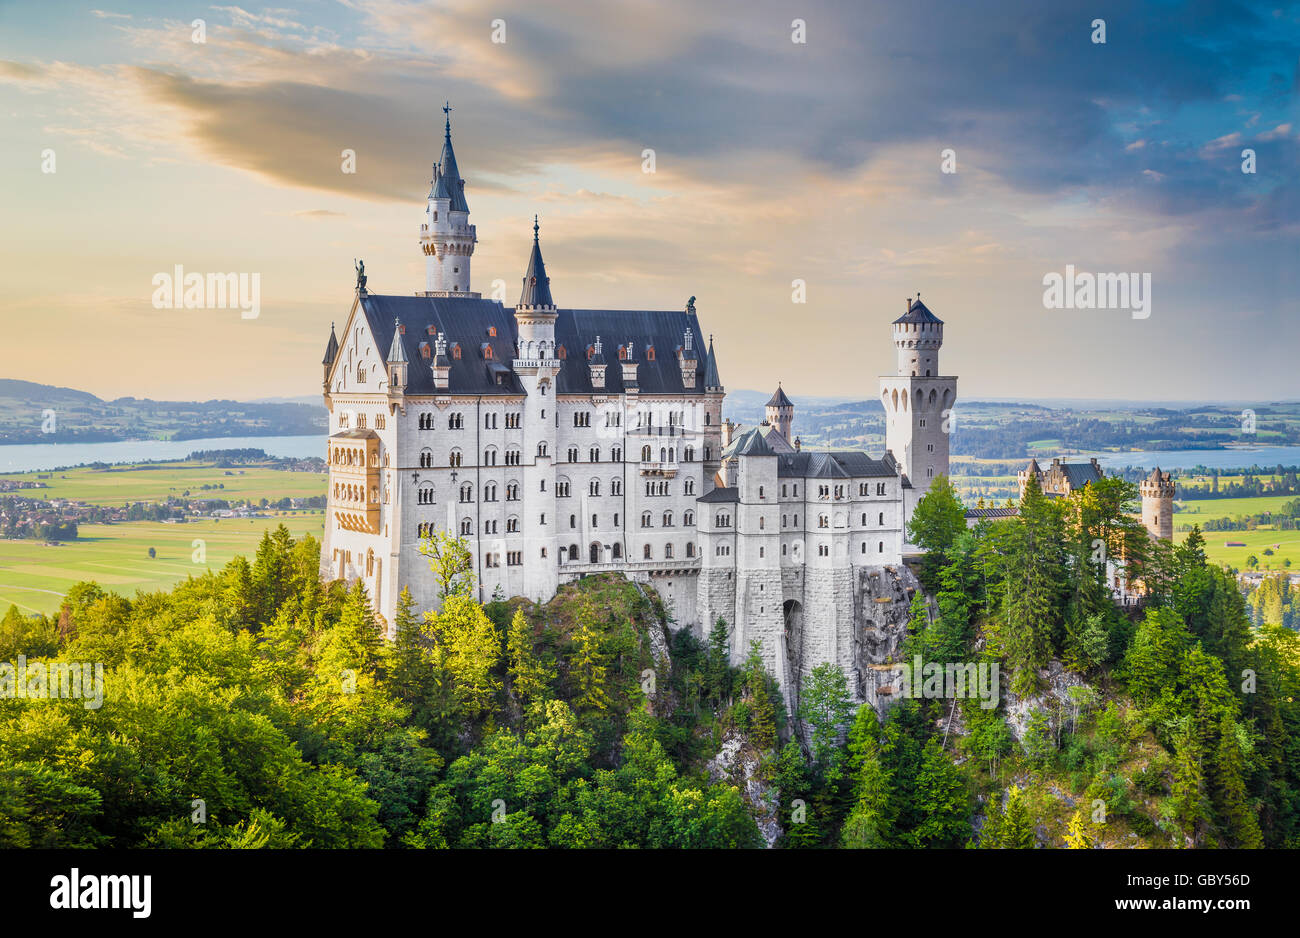 Vista clásica del mundialmente famoso Castillo de Neuschwanstein, uno de los castillos más visitados de Europa, al atardecer, Baviera, Alemania Foto de stock